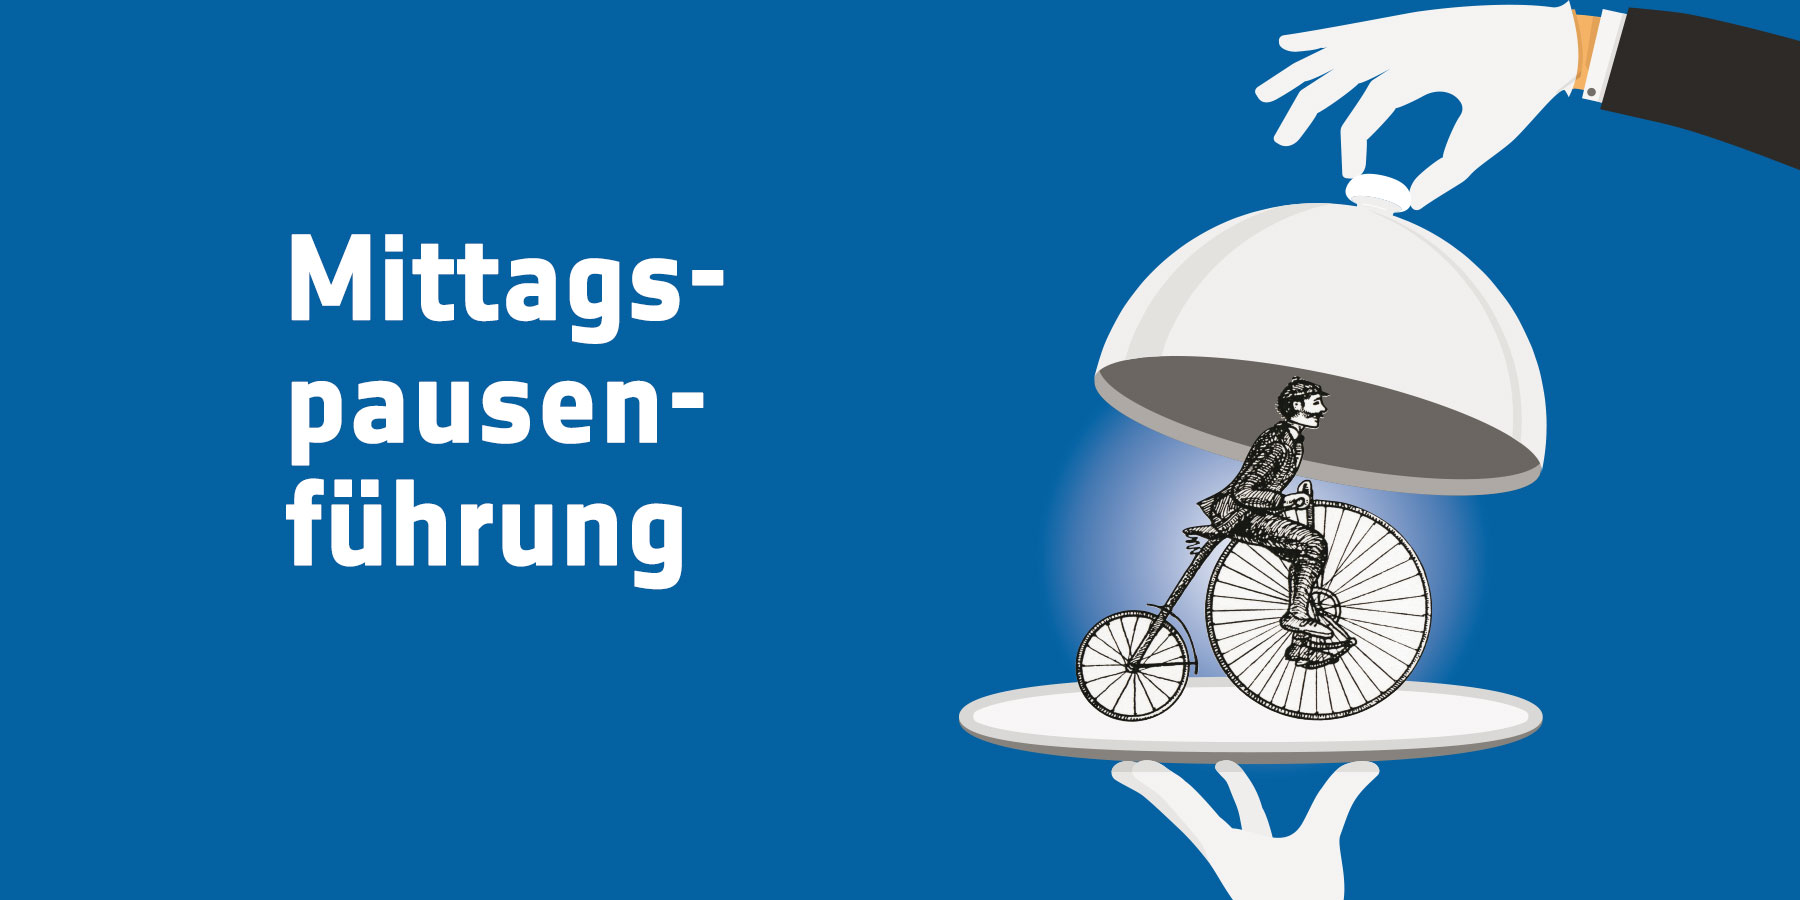 Titel "Mittagspausenführung" auf blauen Hintergrund mit einem Hochradfahrer unter einer Servirglocke